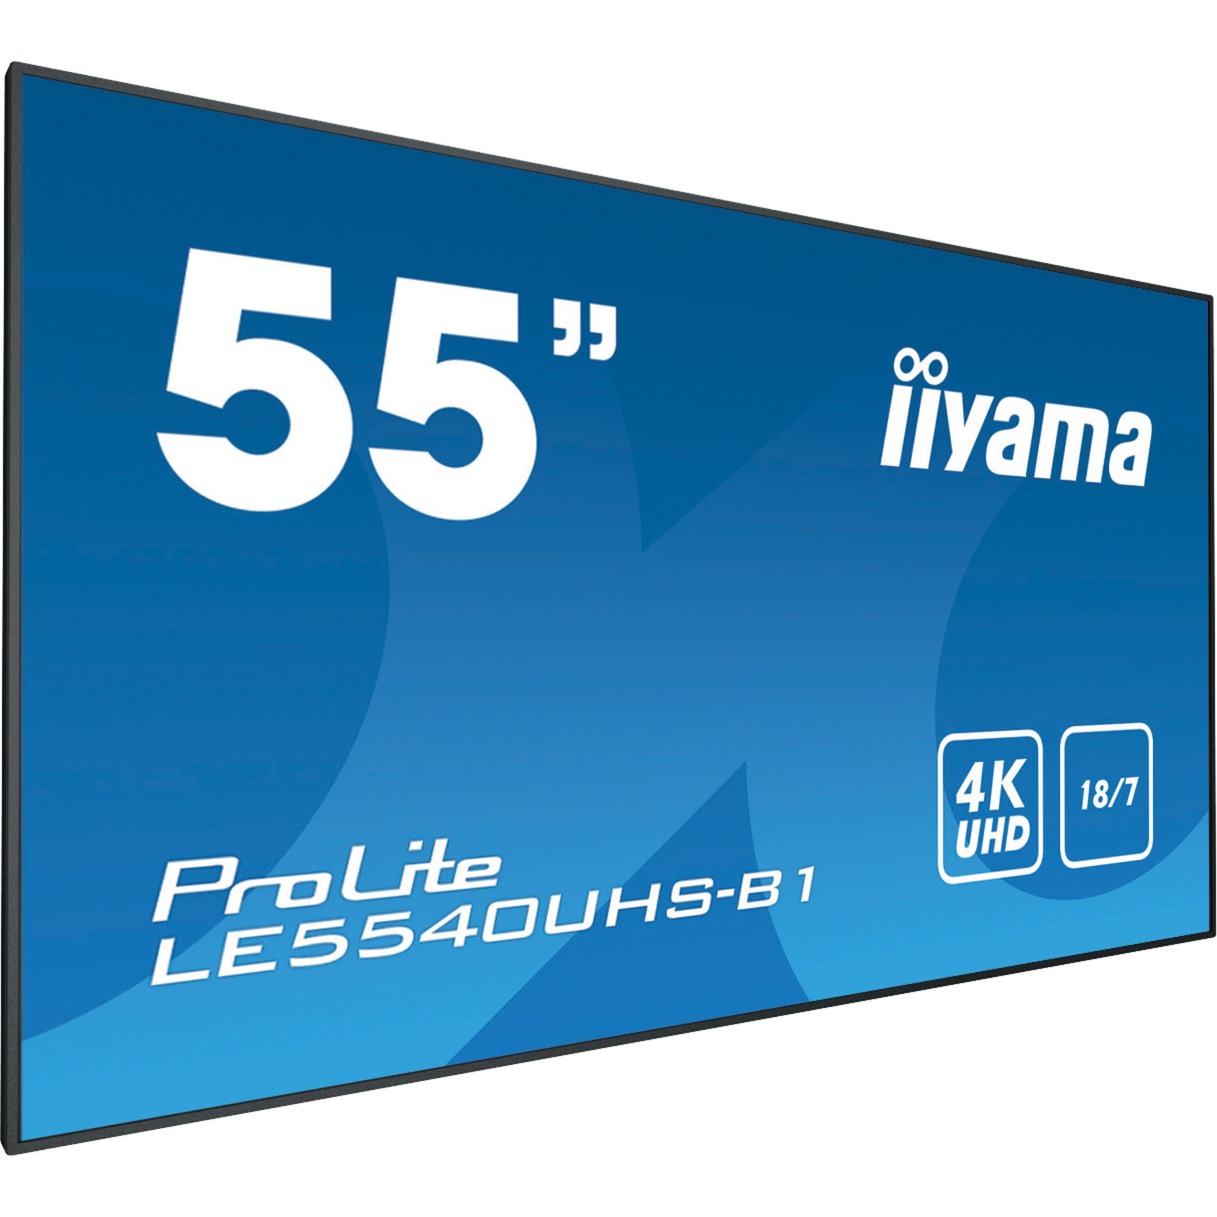 LE5540UHS-B1 wyświetlacz znaków 138,7 cm (54.6") LED (Dioda elektroluminescencyjna) 4K Ultra HD Czarny